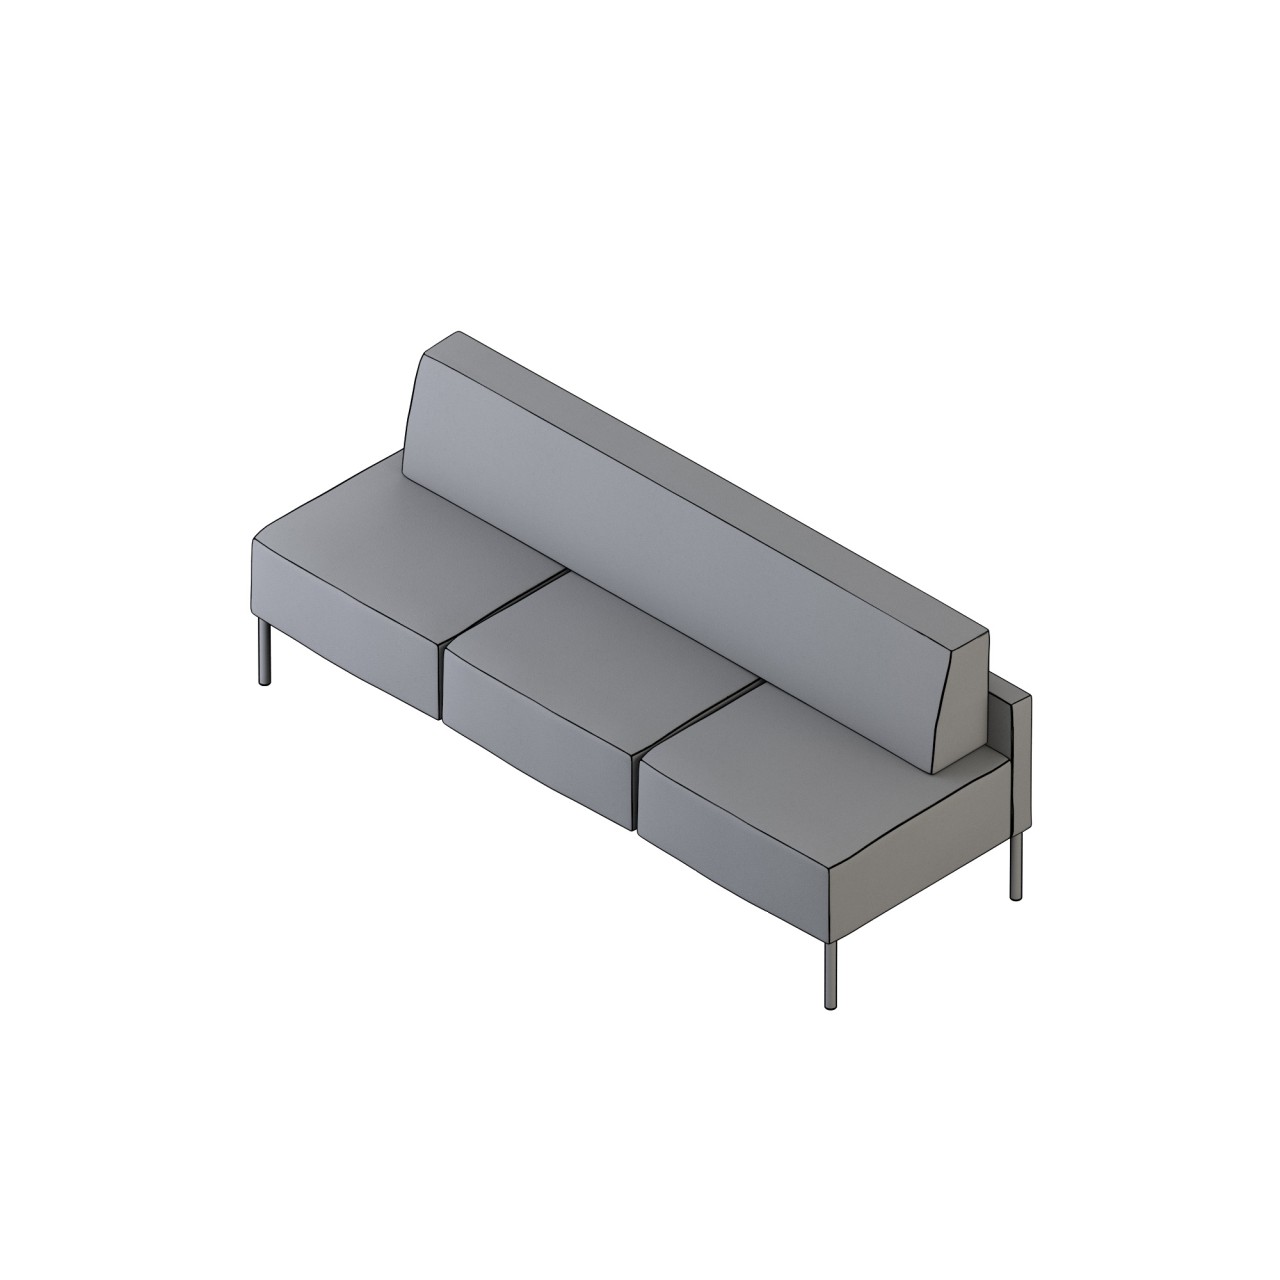 mozzo lounge/modular - 62016
COM 8.5 COL 170